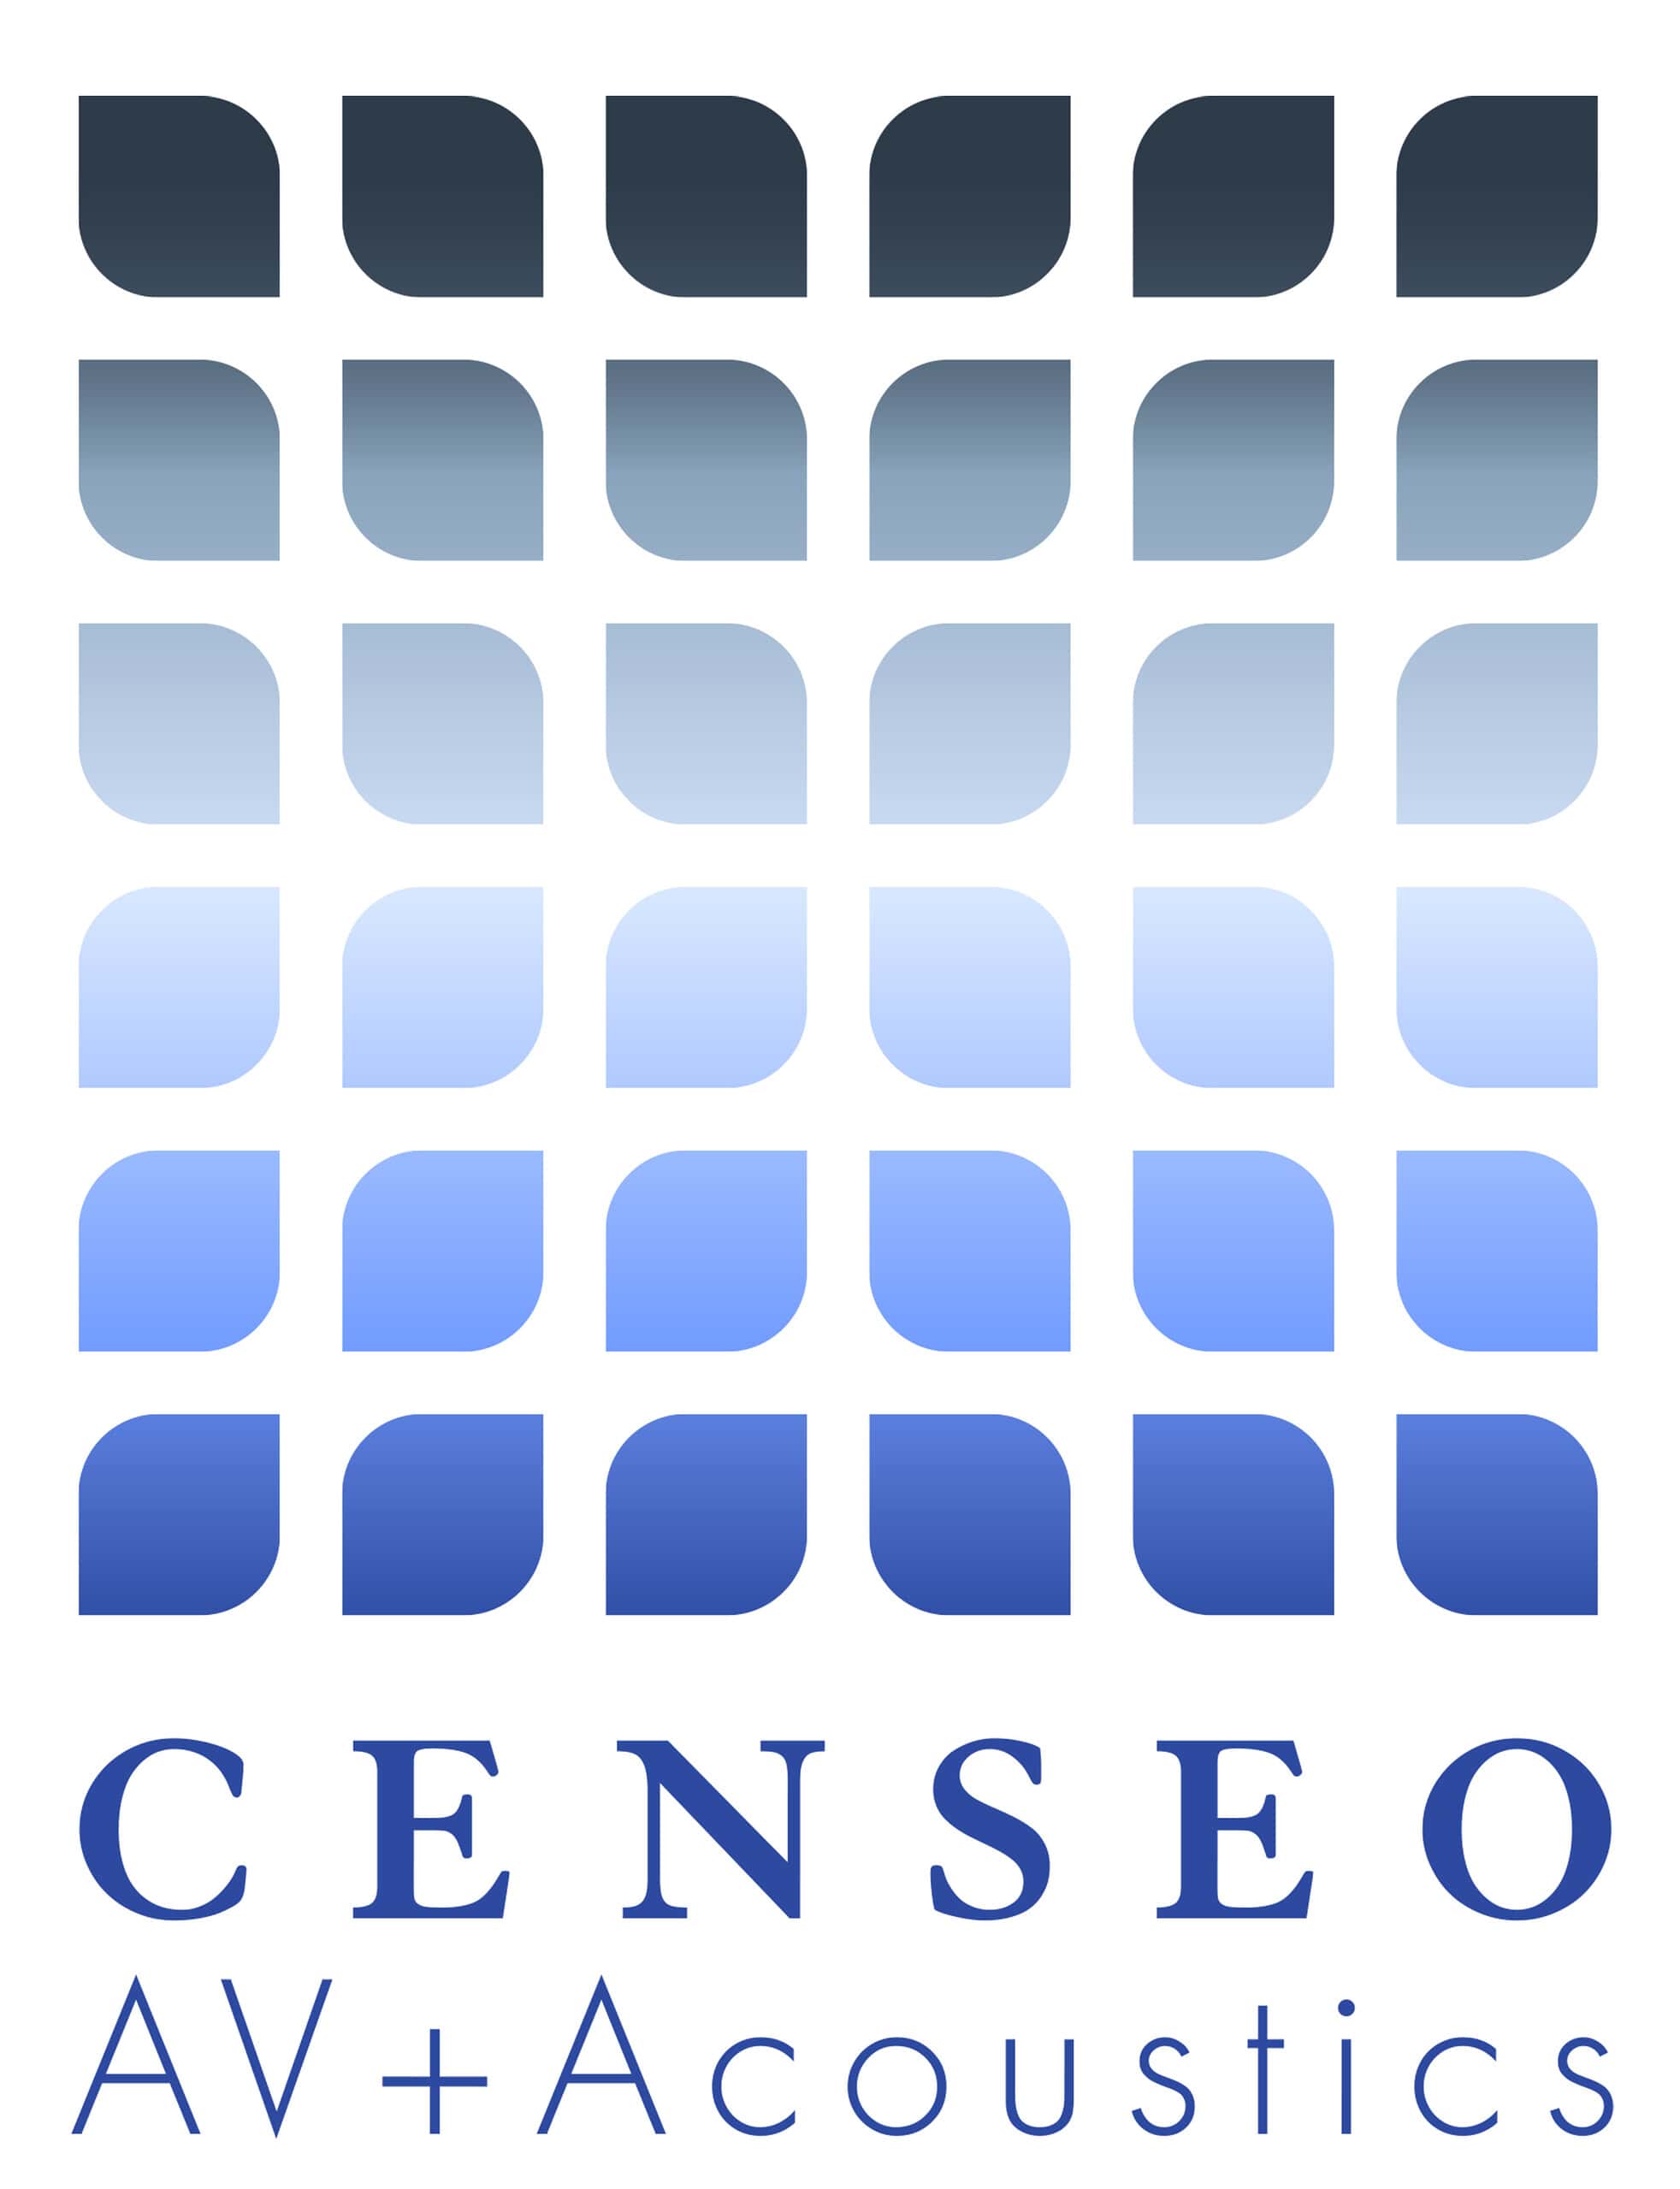 censeo_logo_square_signature_line